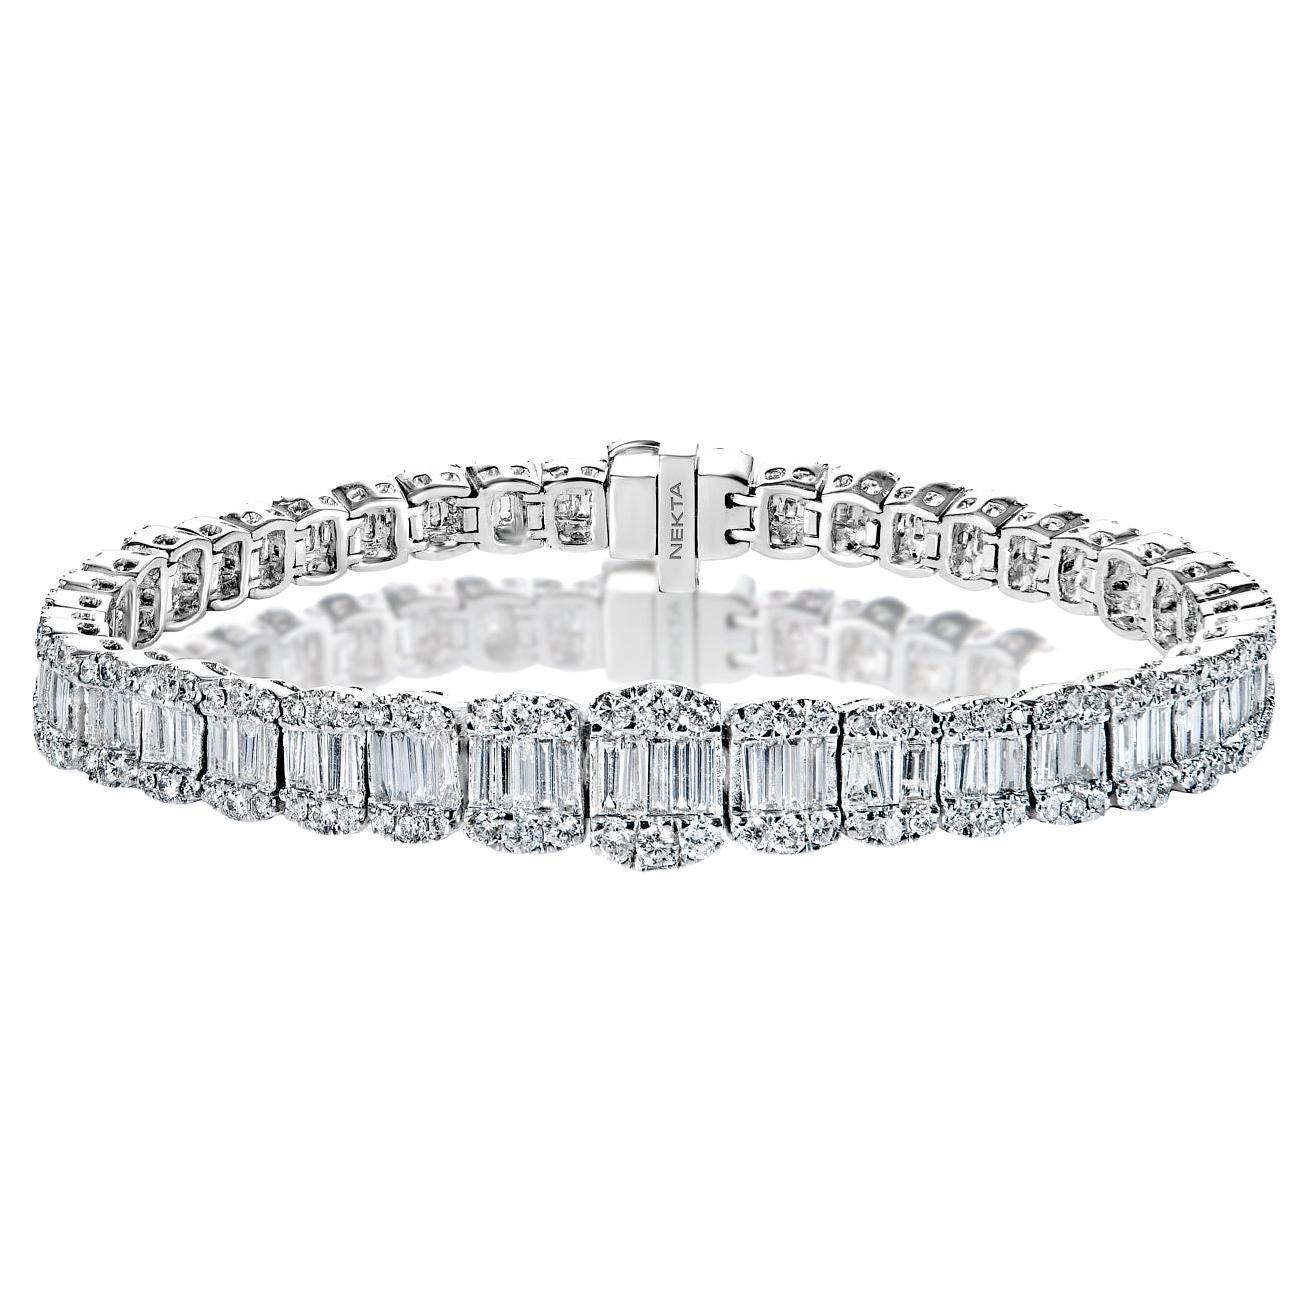 Bracelet tennis en diamants combinés de 9 carats certifiés